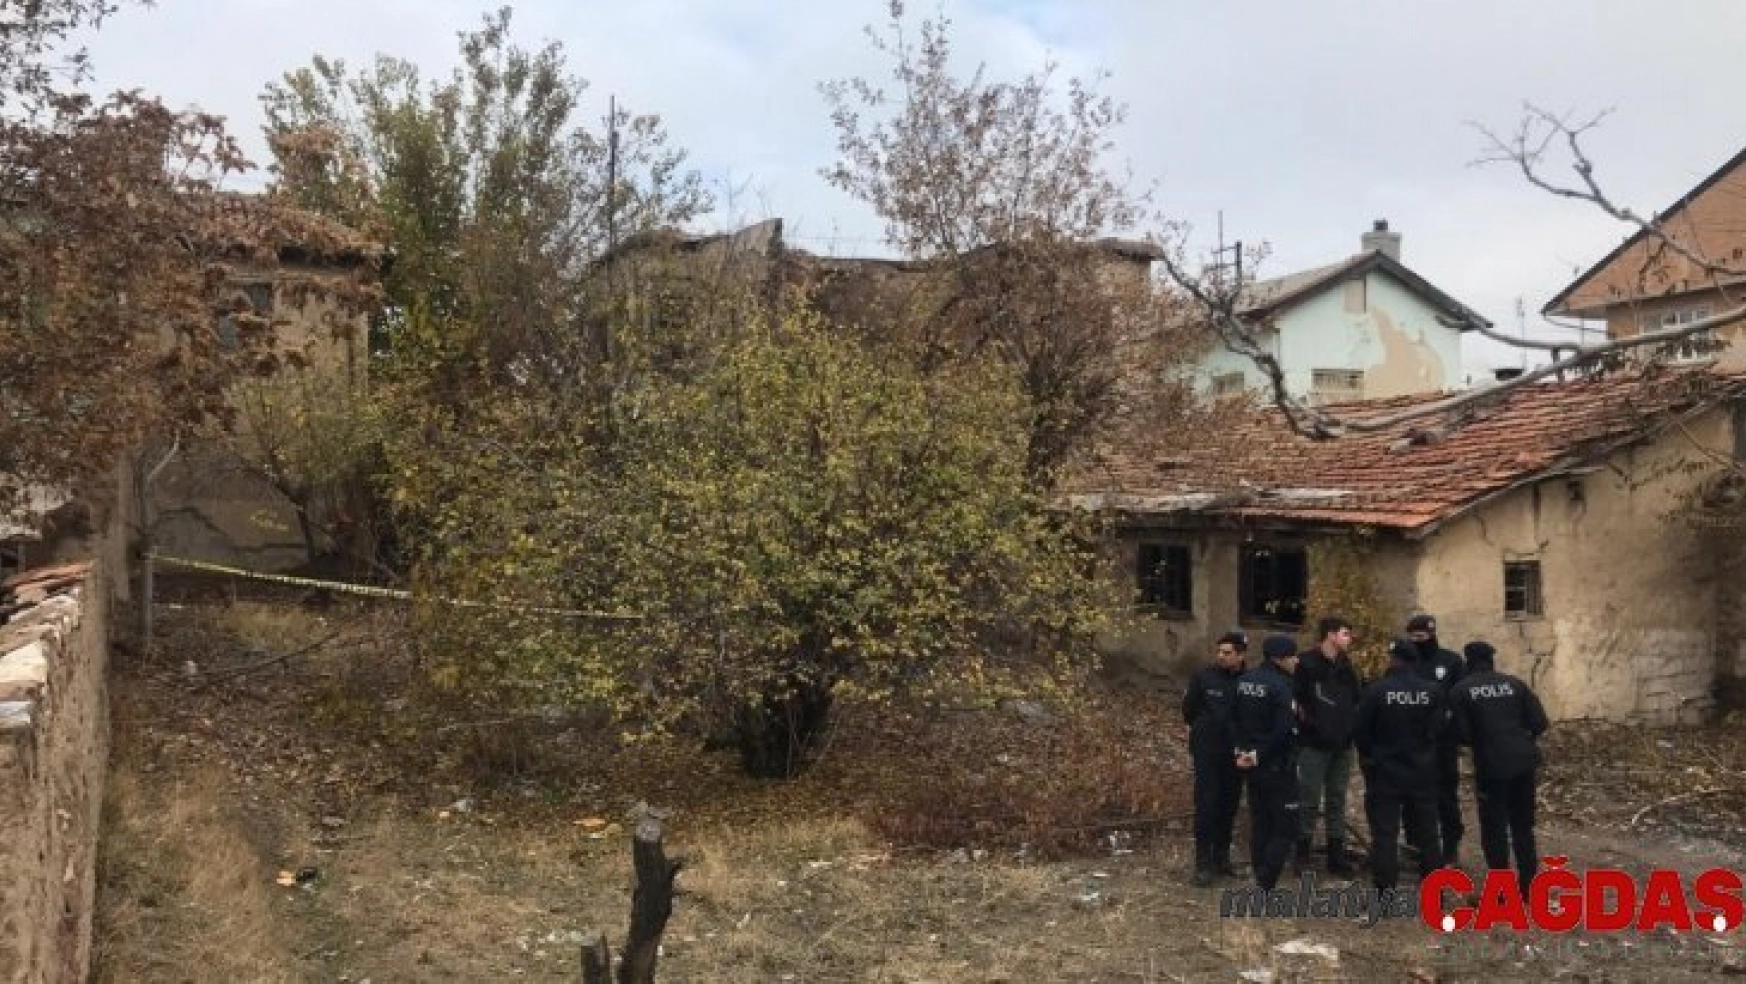 Konya Valisi Toprak: 'Enkazdaki 3 kişinin cansız bedenine ulaşıldı'